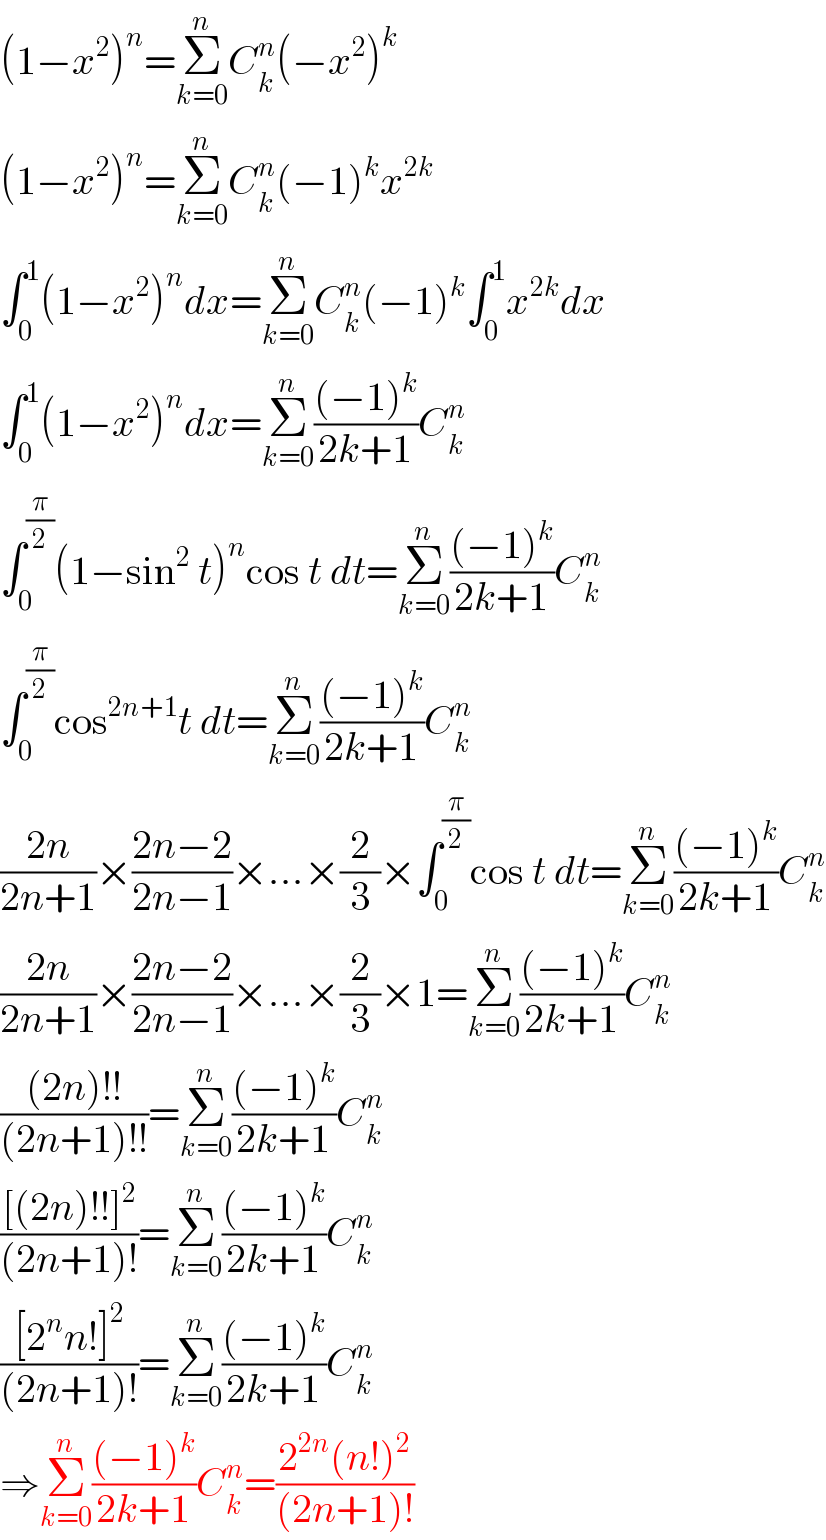 (1−x^2 )^n =Σ_(k=0) ^n C_k ^n (−x^2 )^k   (1−x^2 )^n =Σ_(k=0) ^n C_k ^n (−1)^k x^(2k)   ∫_0 ^1 (1−x^2 )^n dx=Σ_(k=0) ^n C_k ^n (−1)^k ∫_0 ^1 x^(2k) dx  ∫_0 ^1 (1−x^2 )^n dx=Σ_(k=0) ^n (((−1)^k )/(2k+1))C_k ^n   ∫_0 ^(π/2) (1−sin^2  t)^n cos t dt=Σ_(k=0) ^n (((−1)^k )/(2k+1))C_k ^n   ∫_0 ^(π/2) cos^(2n+1) t dt=Σ_(k=0) ^n (((−1)^k )/(2k+1))C_k ^n   ((2n)/(2n+1))×((2n−2)/(2n−1))×...×(2/3)×∫_0 ^(π/2) cos t dt=Σ_(k=0) ^n (((−1)^k )/(2k+1))C_k ^n   ((2n)/(2n+1))×((2n−2)/(2n−1))×...×(2/3)×1=Σ_(k=0) ^n (((−1)^k )/(2k+1))C_k ^n   (((2n)!!)/((2n+1)!!))=Σ_(k=0) ^n (((−1)^k )/(2k+1))C_k ^n   (([(2n)!!]^2 )/((2n+1)!))=Σ_(k=0) ^n (((−1)^k )/(2k+1))C_k ^n   (([2^n n!]^2 )/((2n+1)!))=Σ_(k=0) ^n (((−1)^k )/(2k+1))C_k ^n   ⇒Σ_(k=0) ^n (((−1)^k )/(2k+1))C_k ^n =((2^(2n) (n!)^2 )/((2n+1)!))  